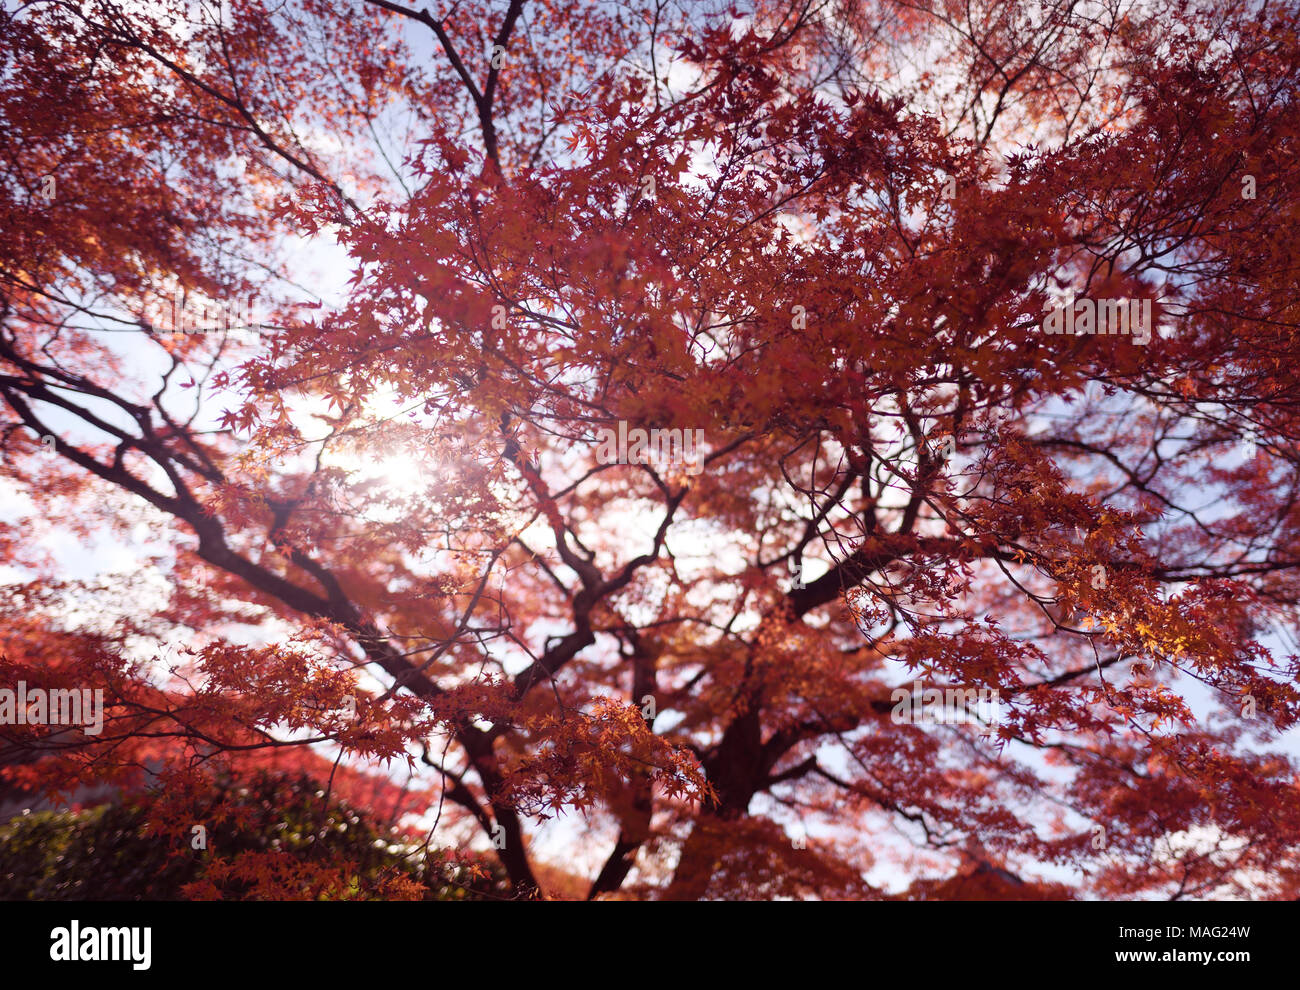 Sonnenlicht durch rote Blätter eines schönen japanischen Ahorn, Acer palmatum, im Herbst Landschaft in Kyoto, Japan Stockfoto